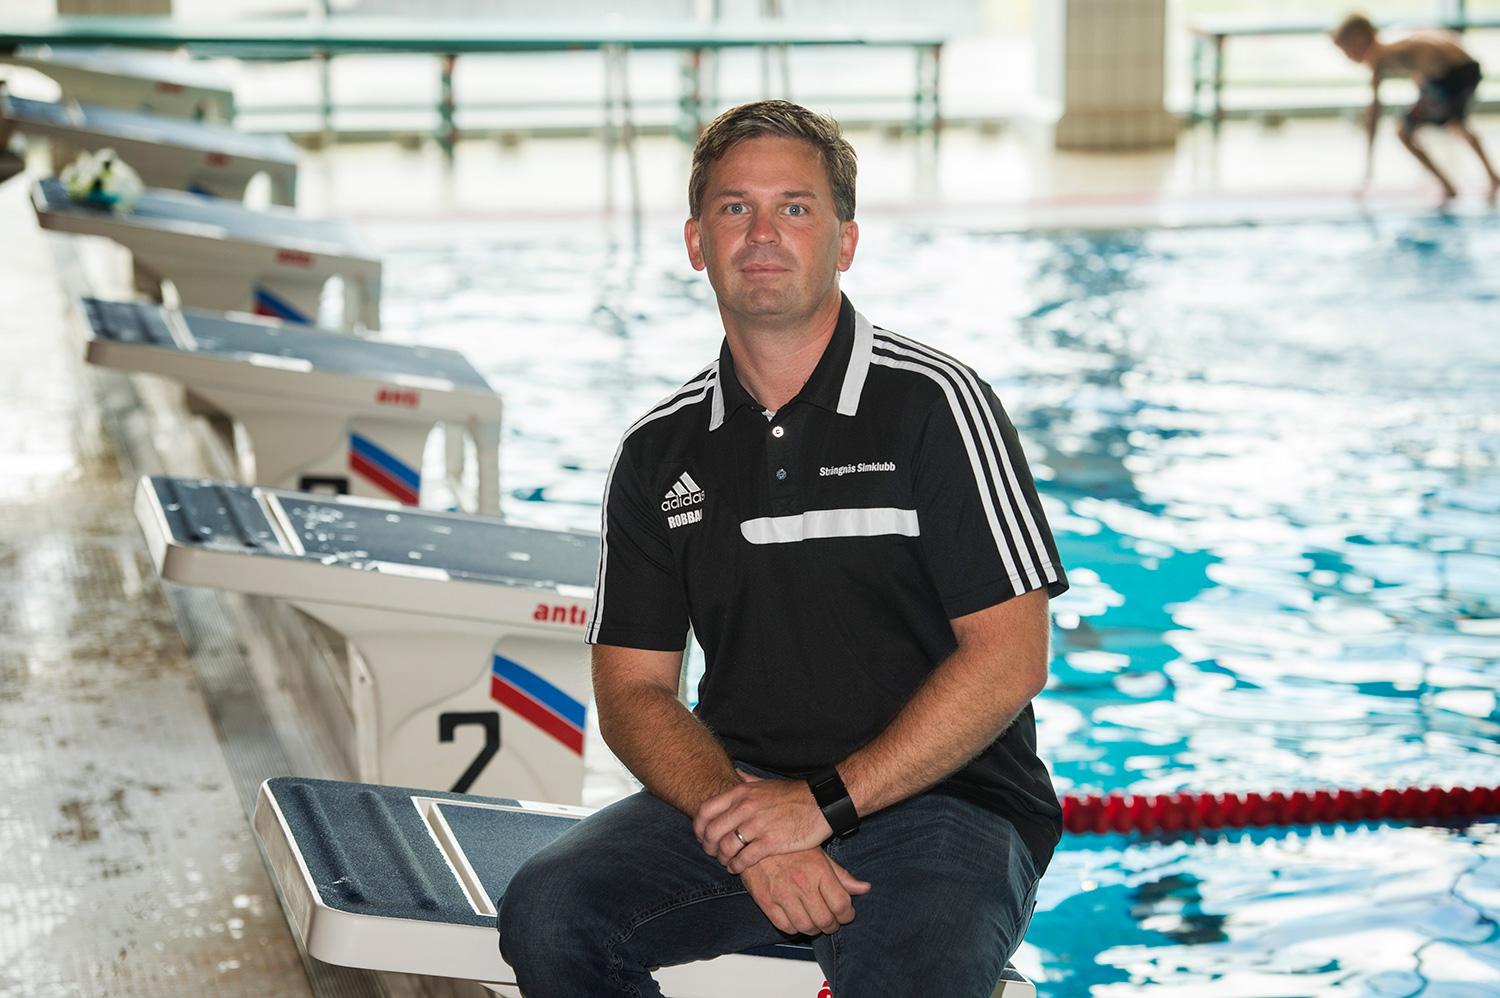 ”Han är jättevälkommen hit och till simklubben”, säger klubbchef Robert Bergkvist.